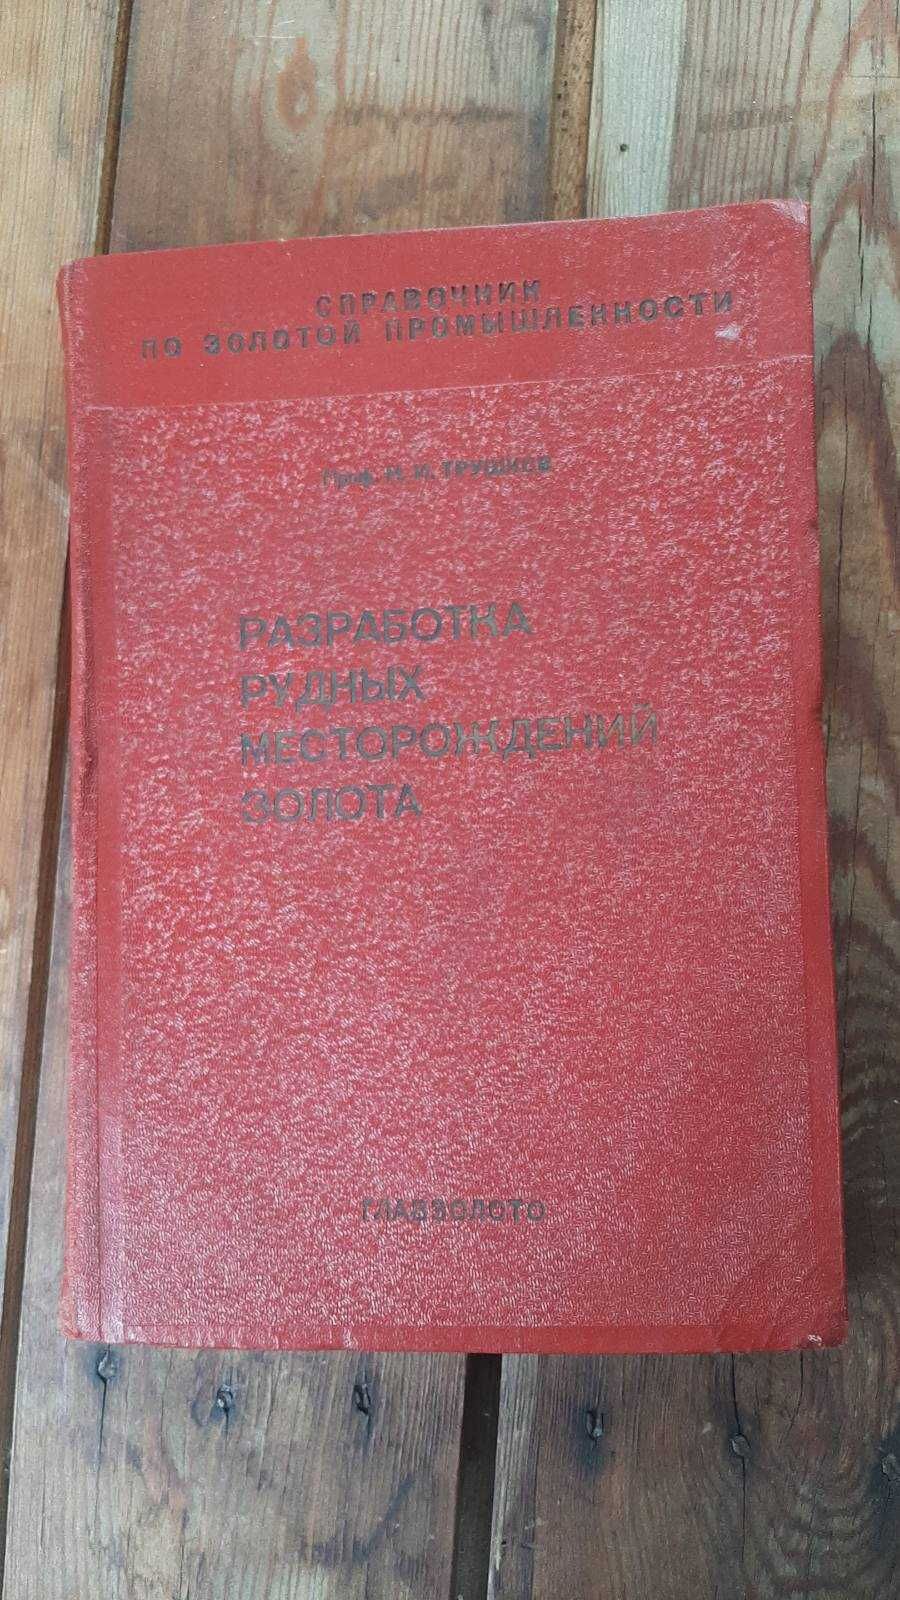 Книга  "Разработка Рудных Месторождений Золота" Н.И.Трушков 1935 г.